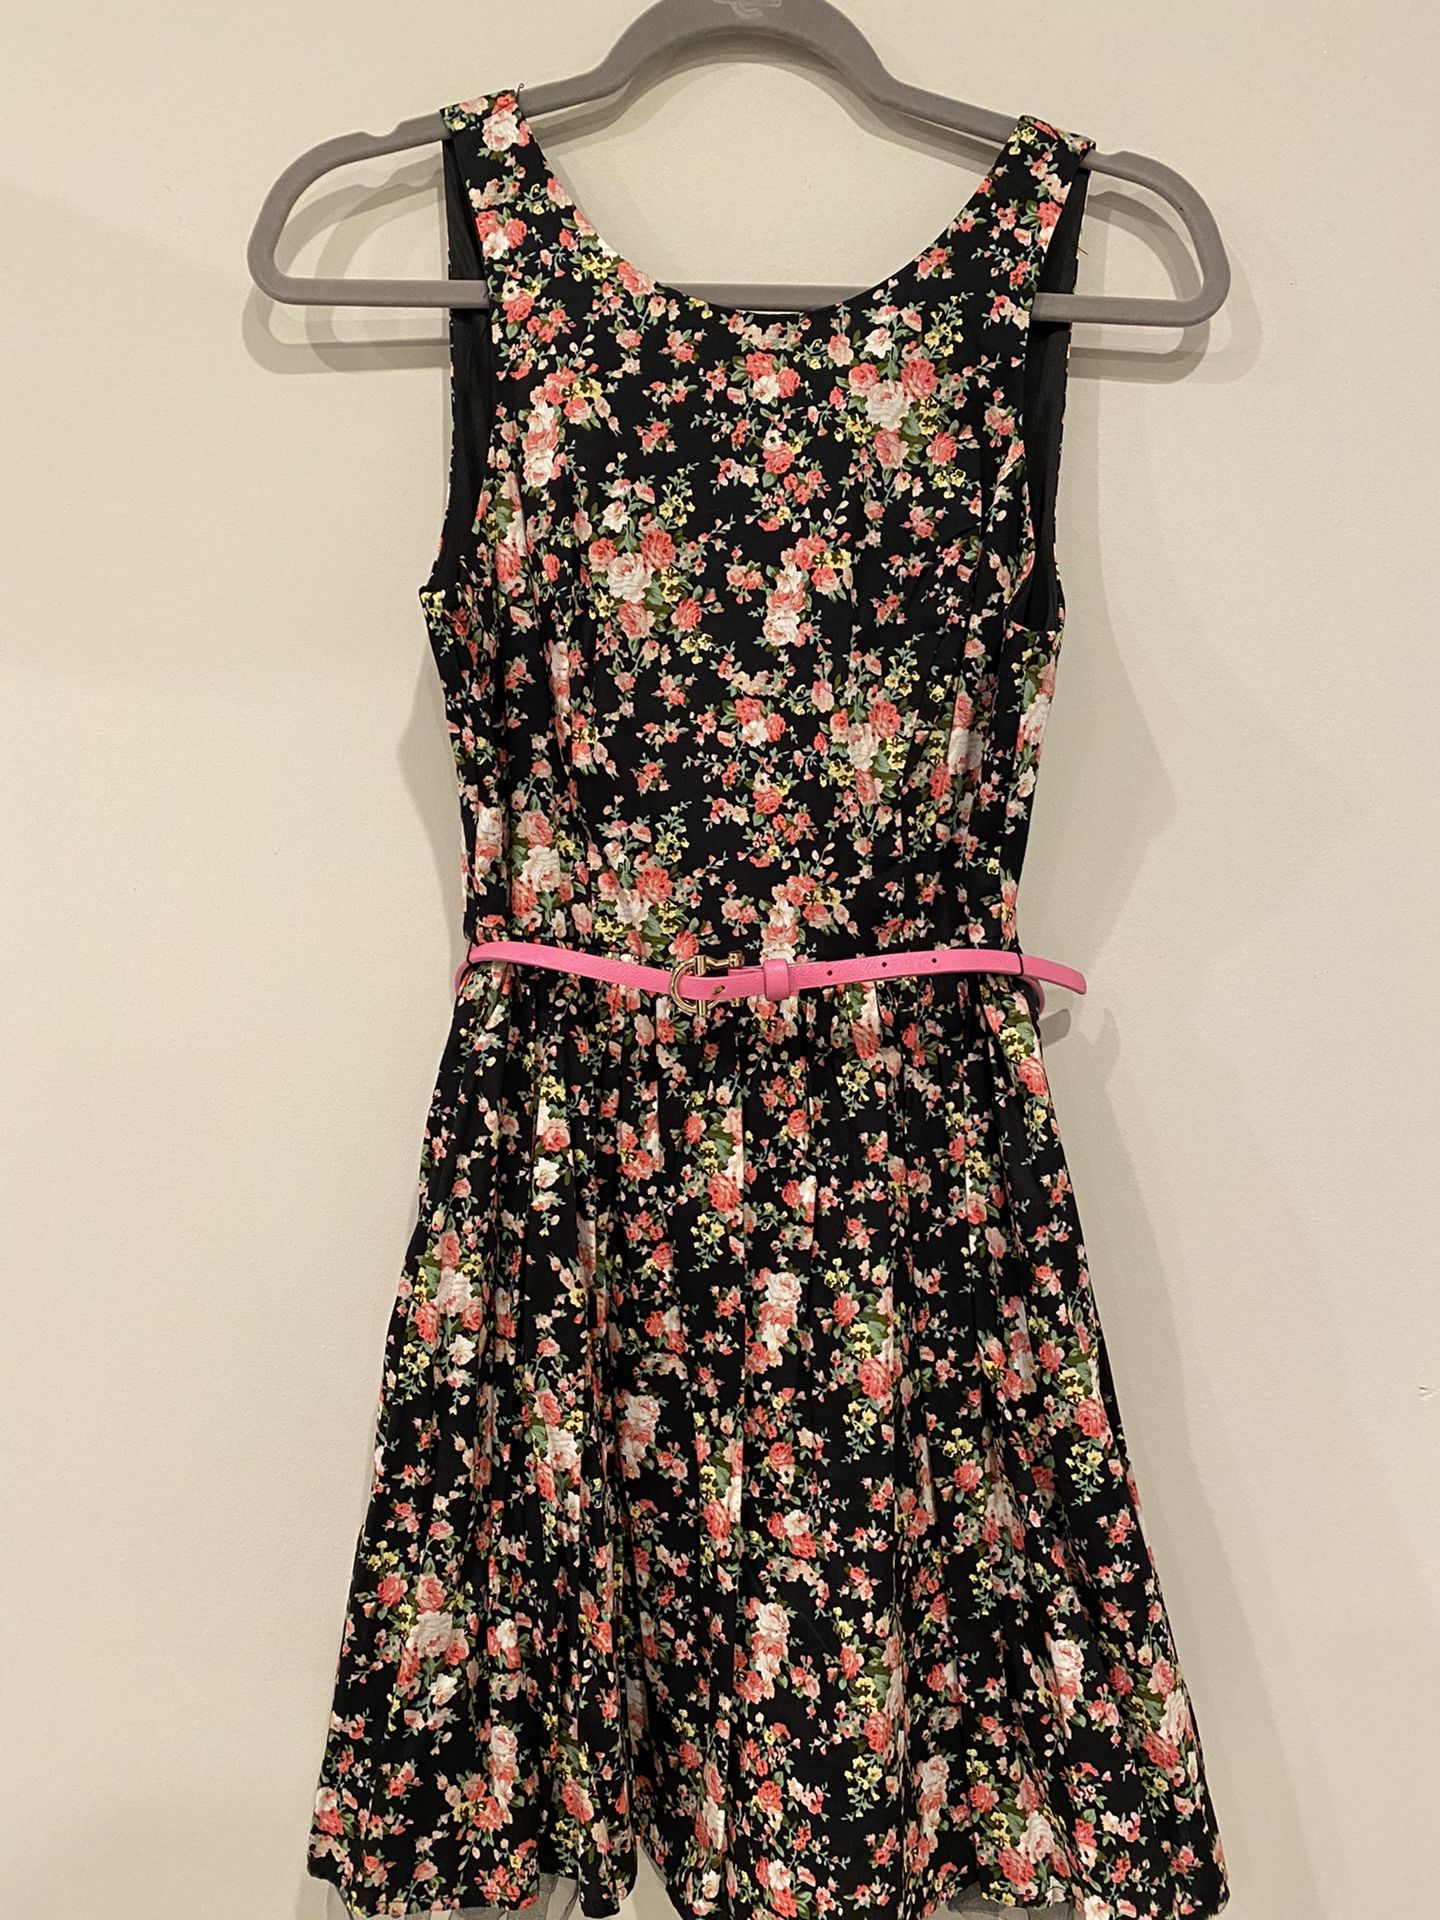 Black floral a-line dress with pink belt